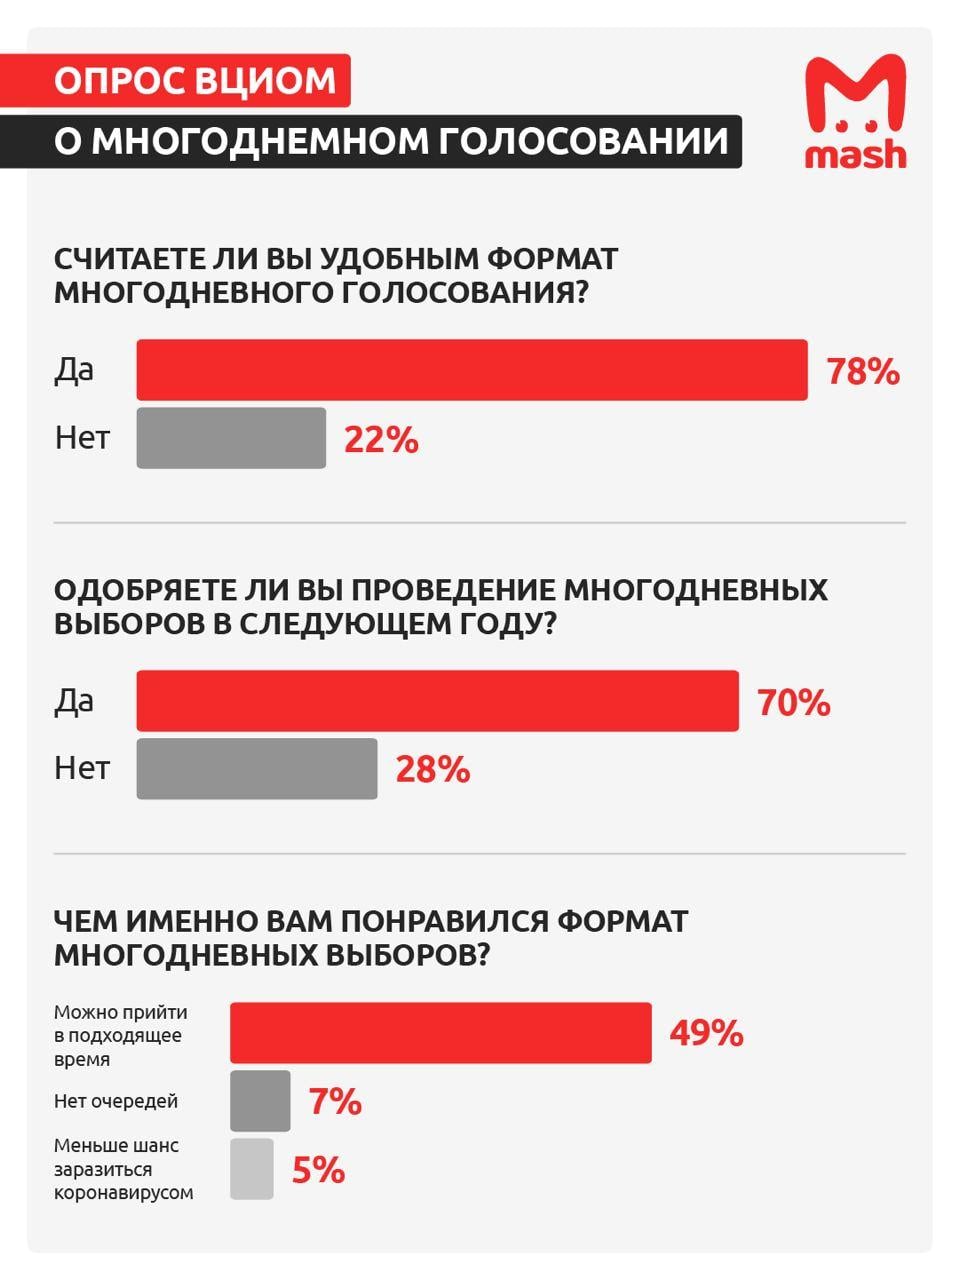 Российское агентство «правильных» исследований посчитало, что граждане благодарны за 3-дневные выборы